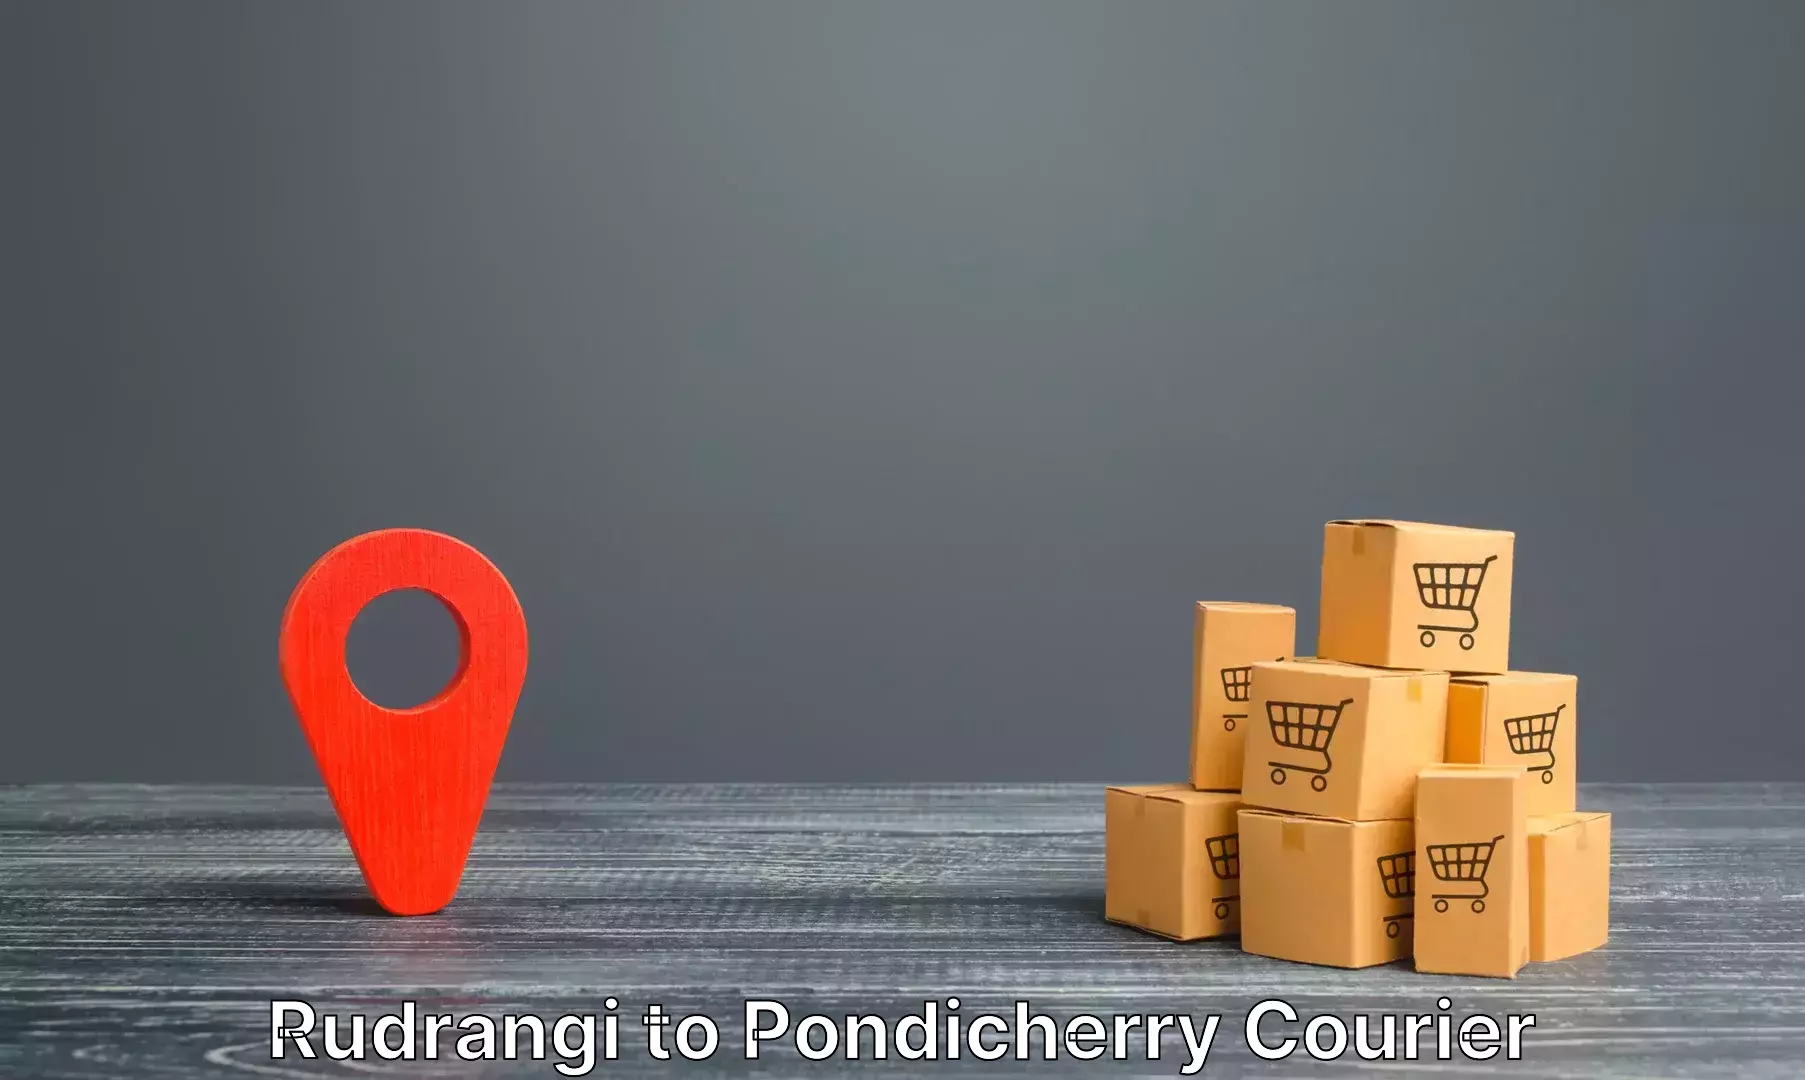 Automated luggage transport Rudrangi to Pondicherry